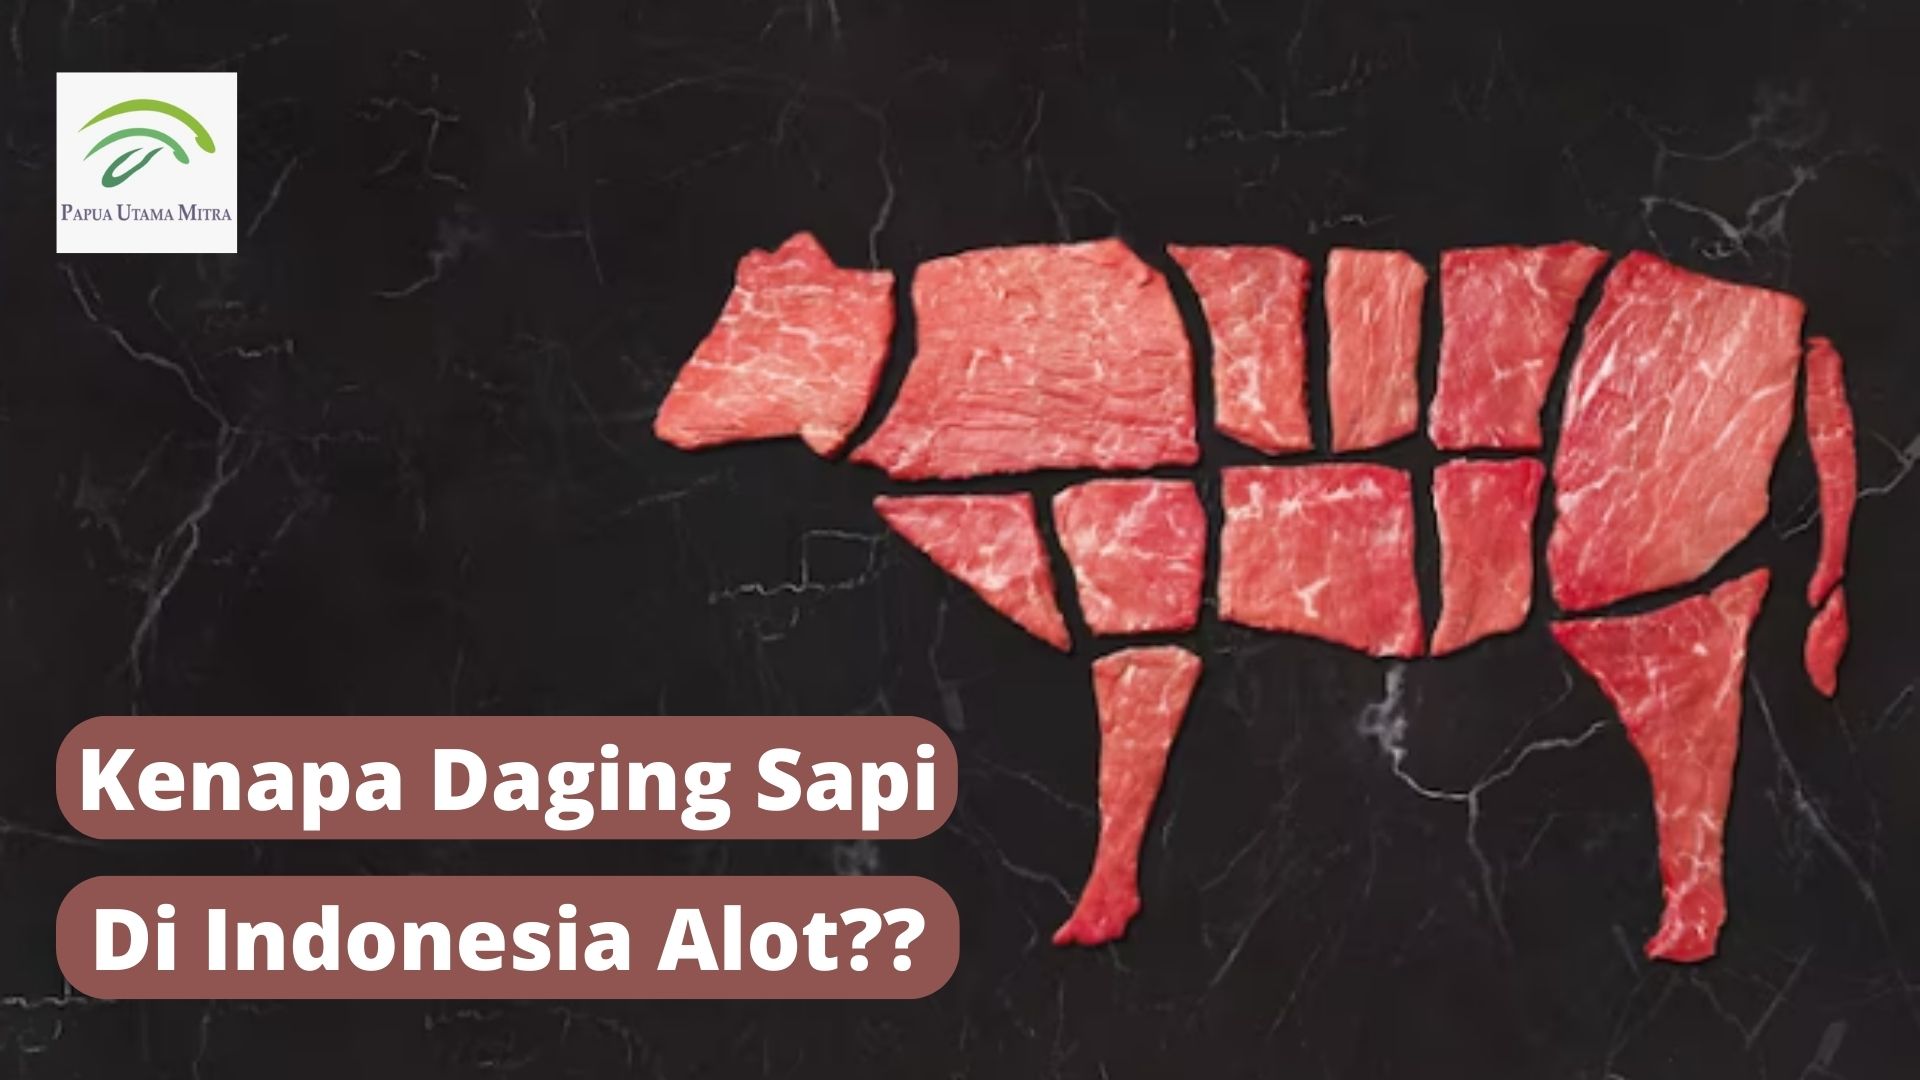 Kenapa Daging Sapi di Indonesia Alot?